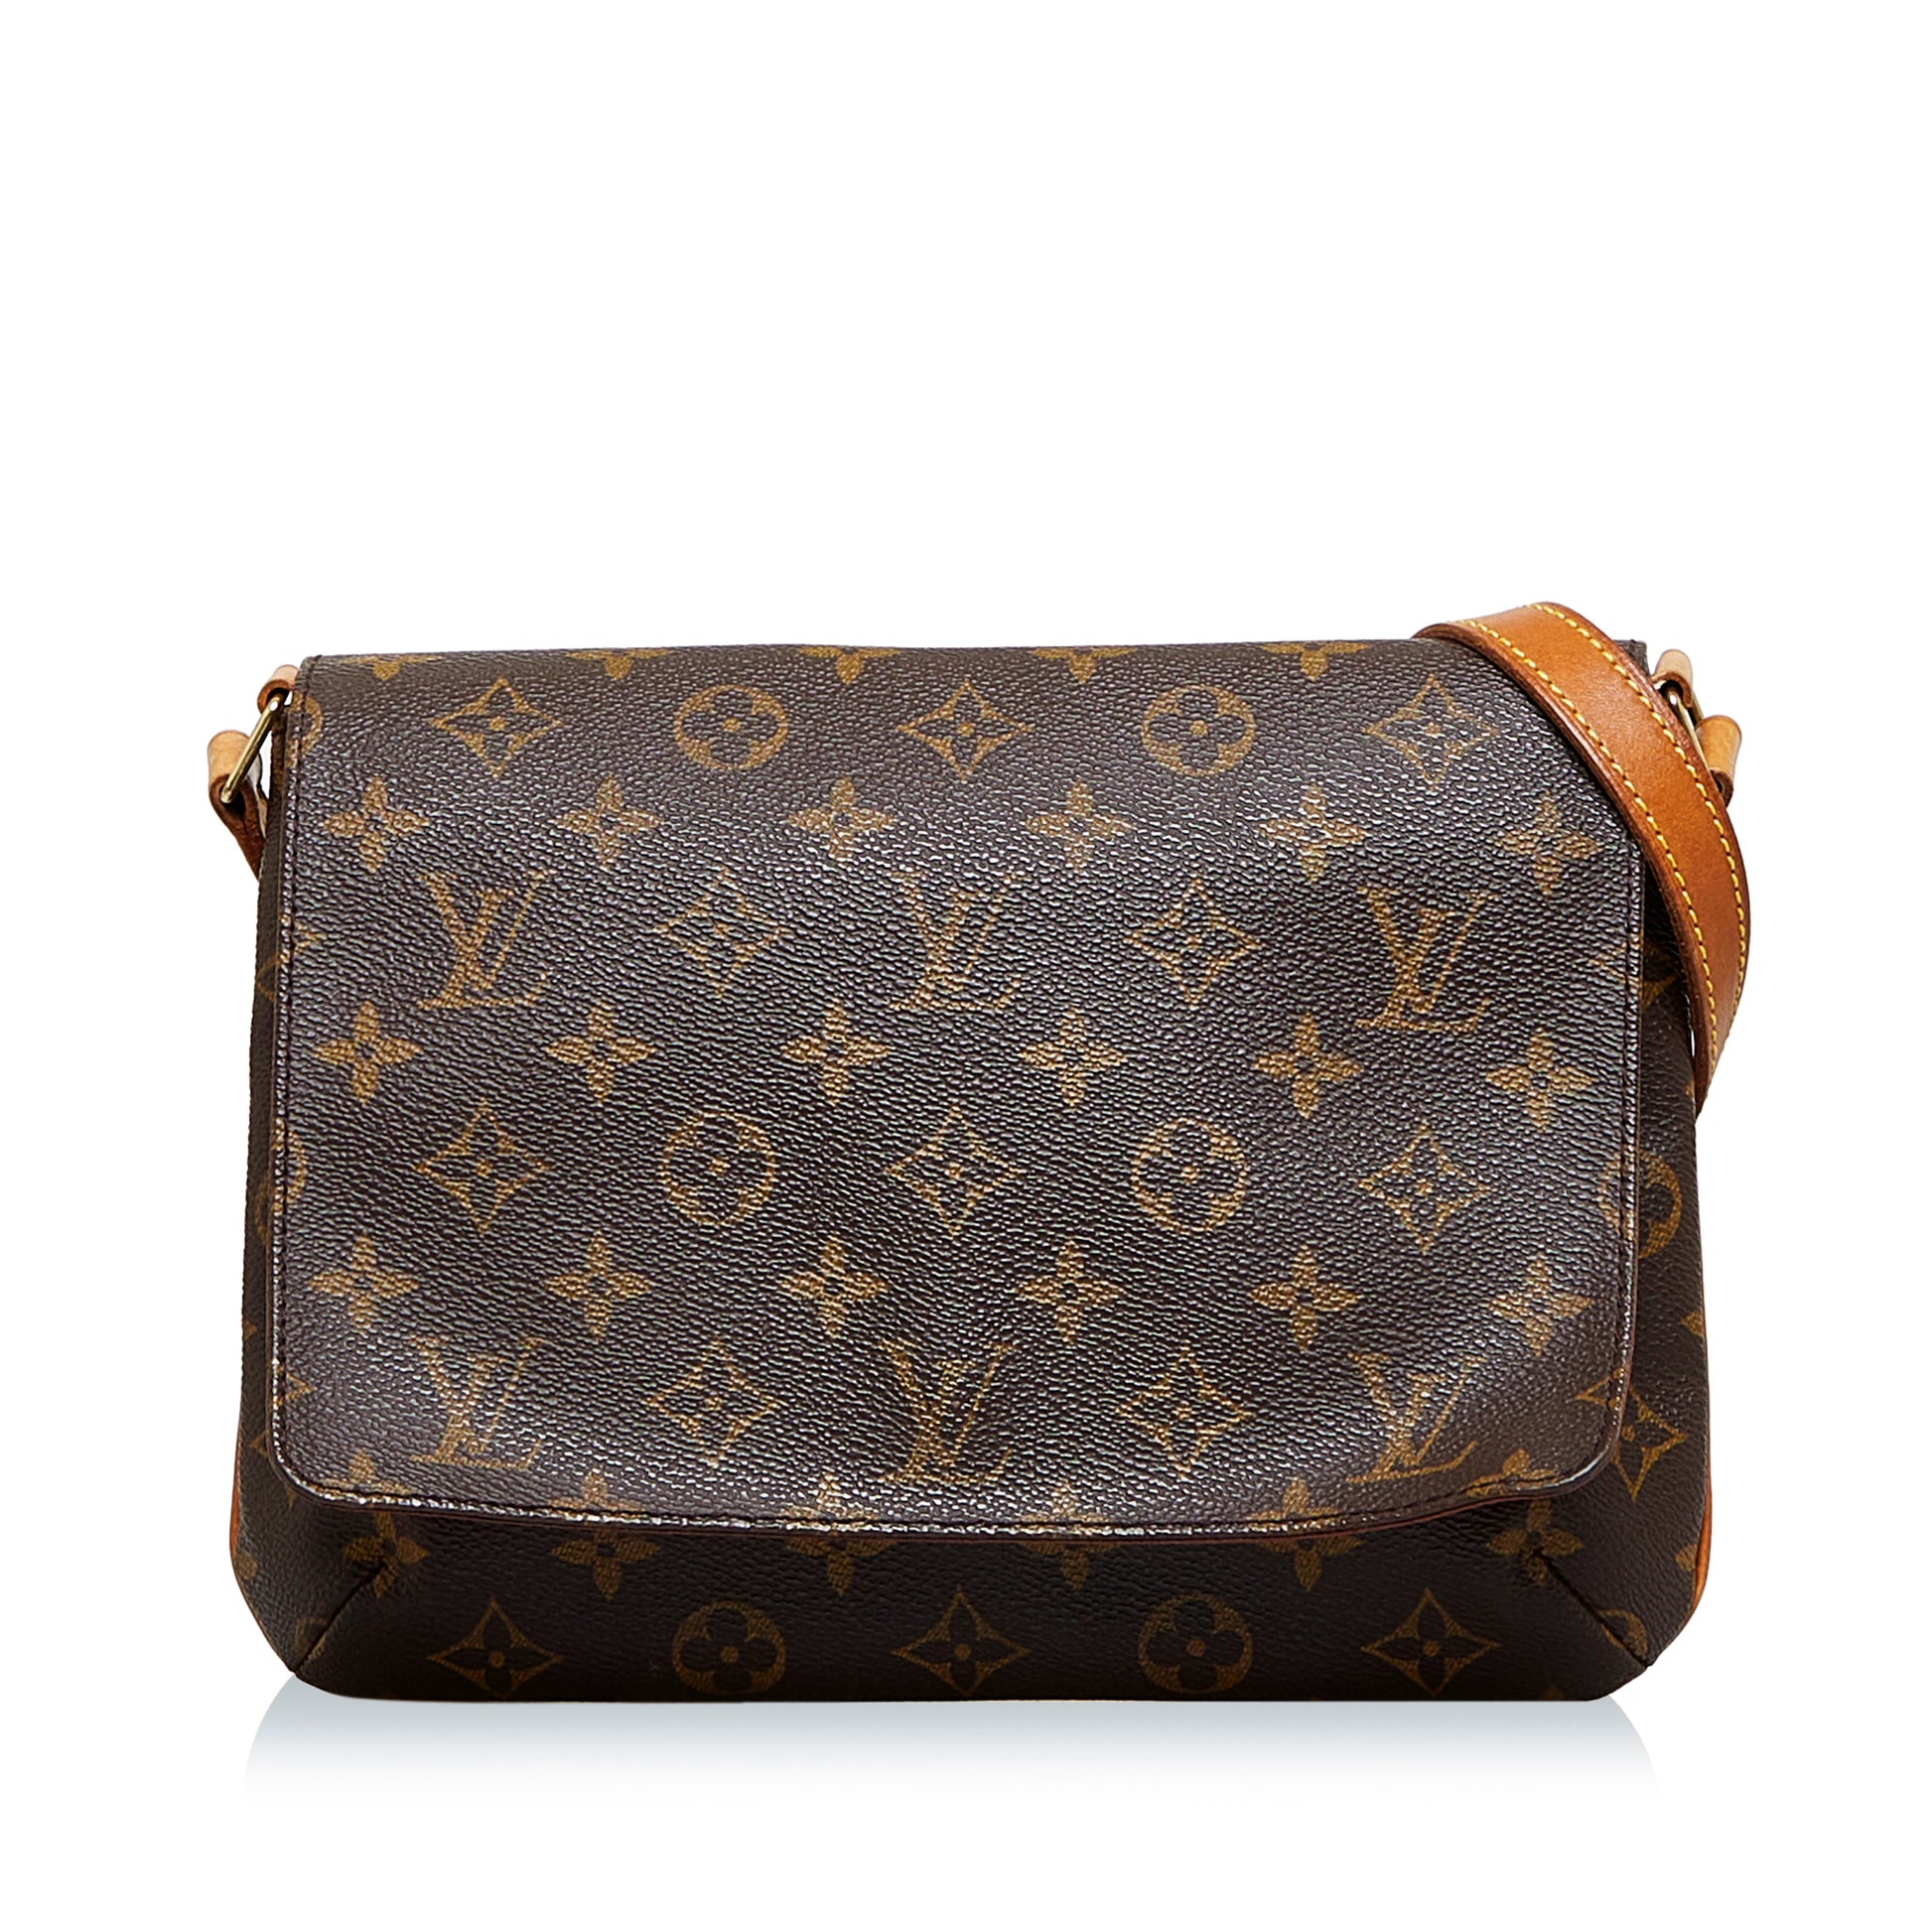 Louis Vuitton Musette Tango Monogram Canvas Shoulder Bag on SALE